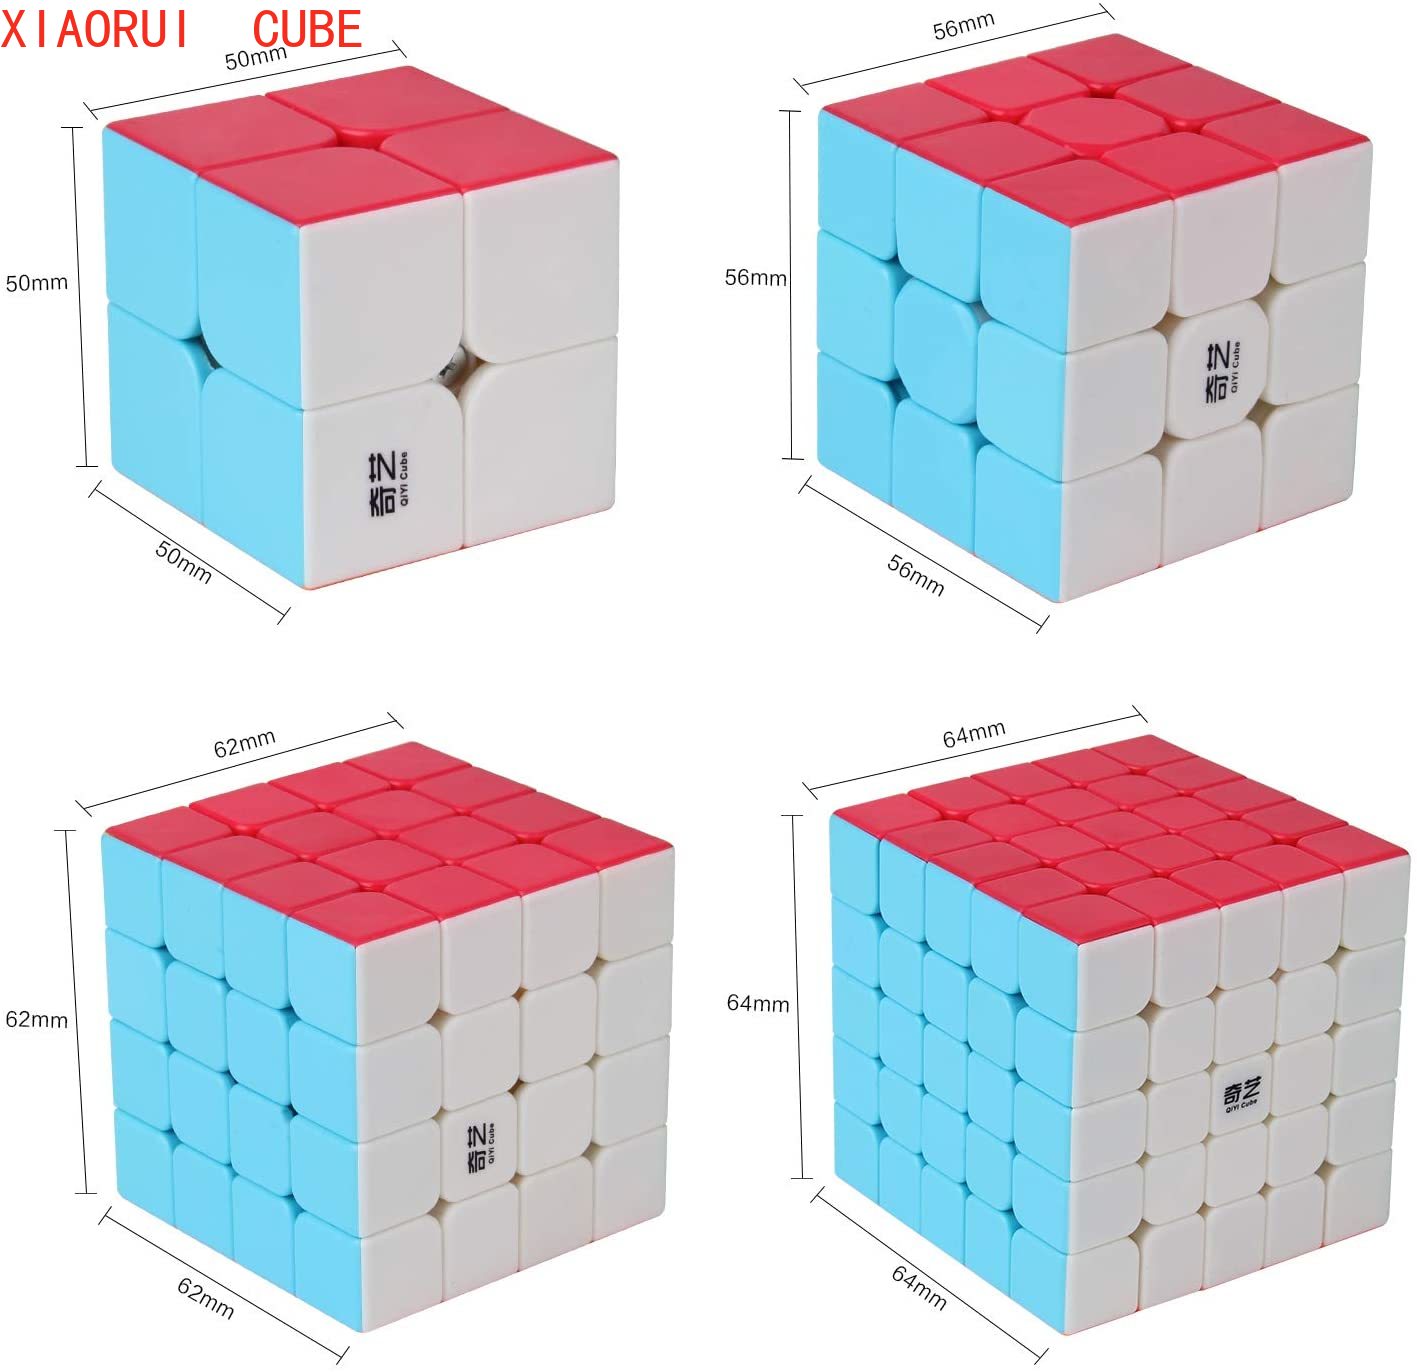 Khối Rubik 2x2 3x3 4x4 5x5